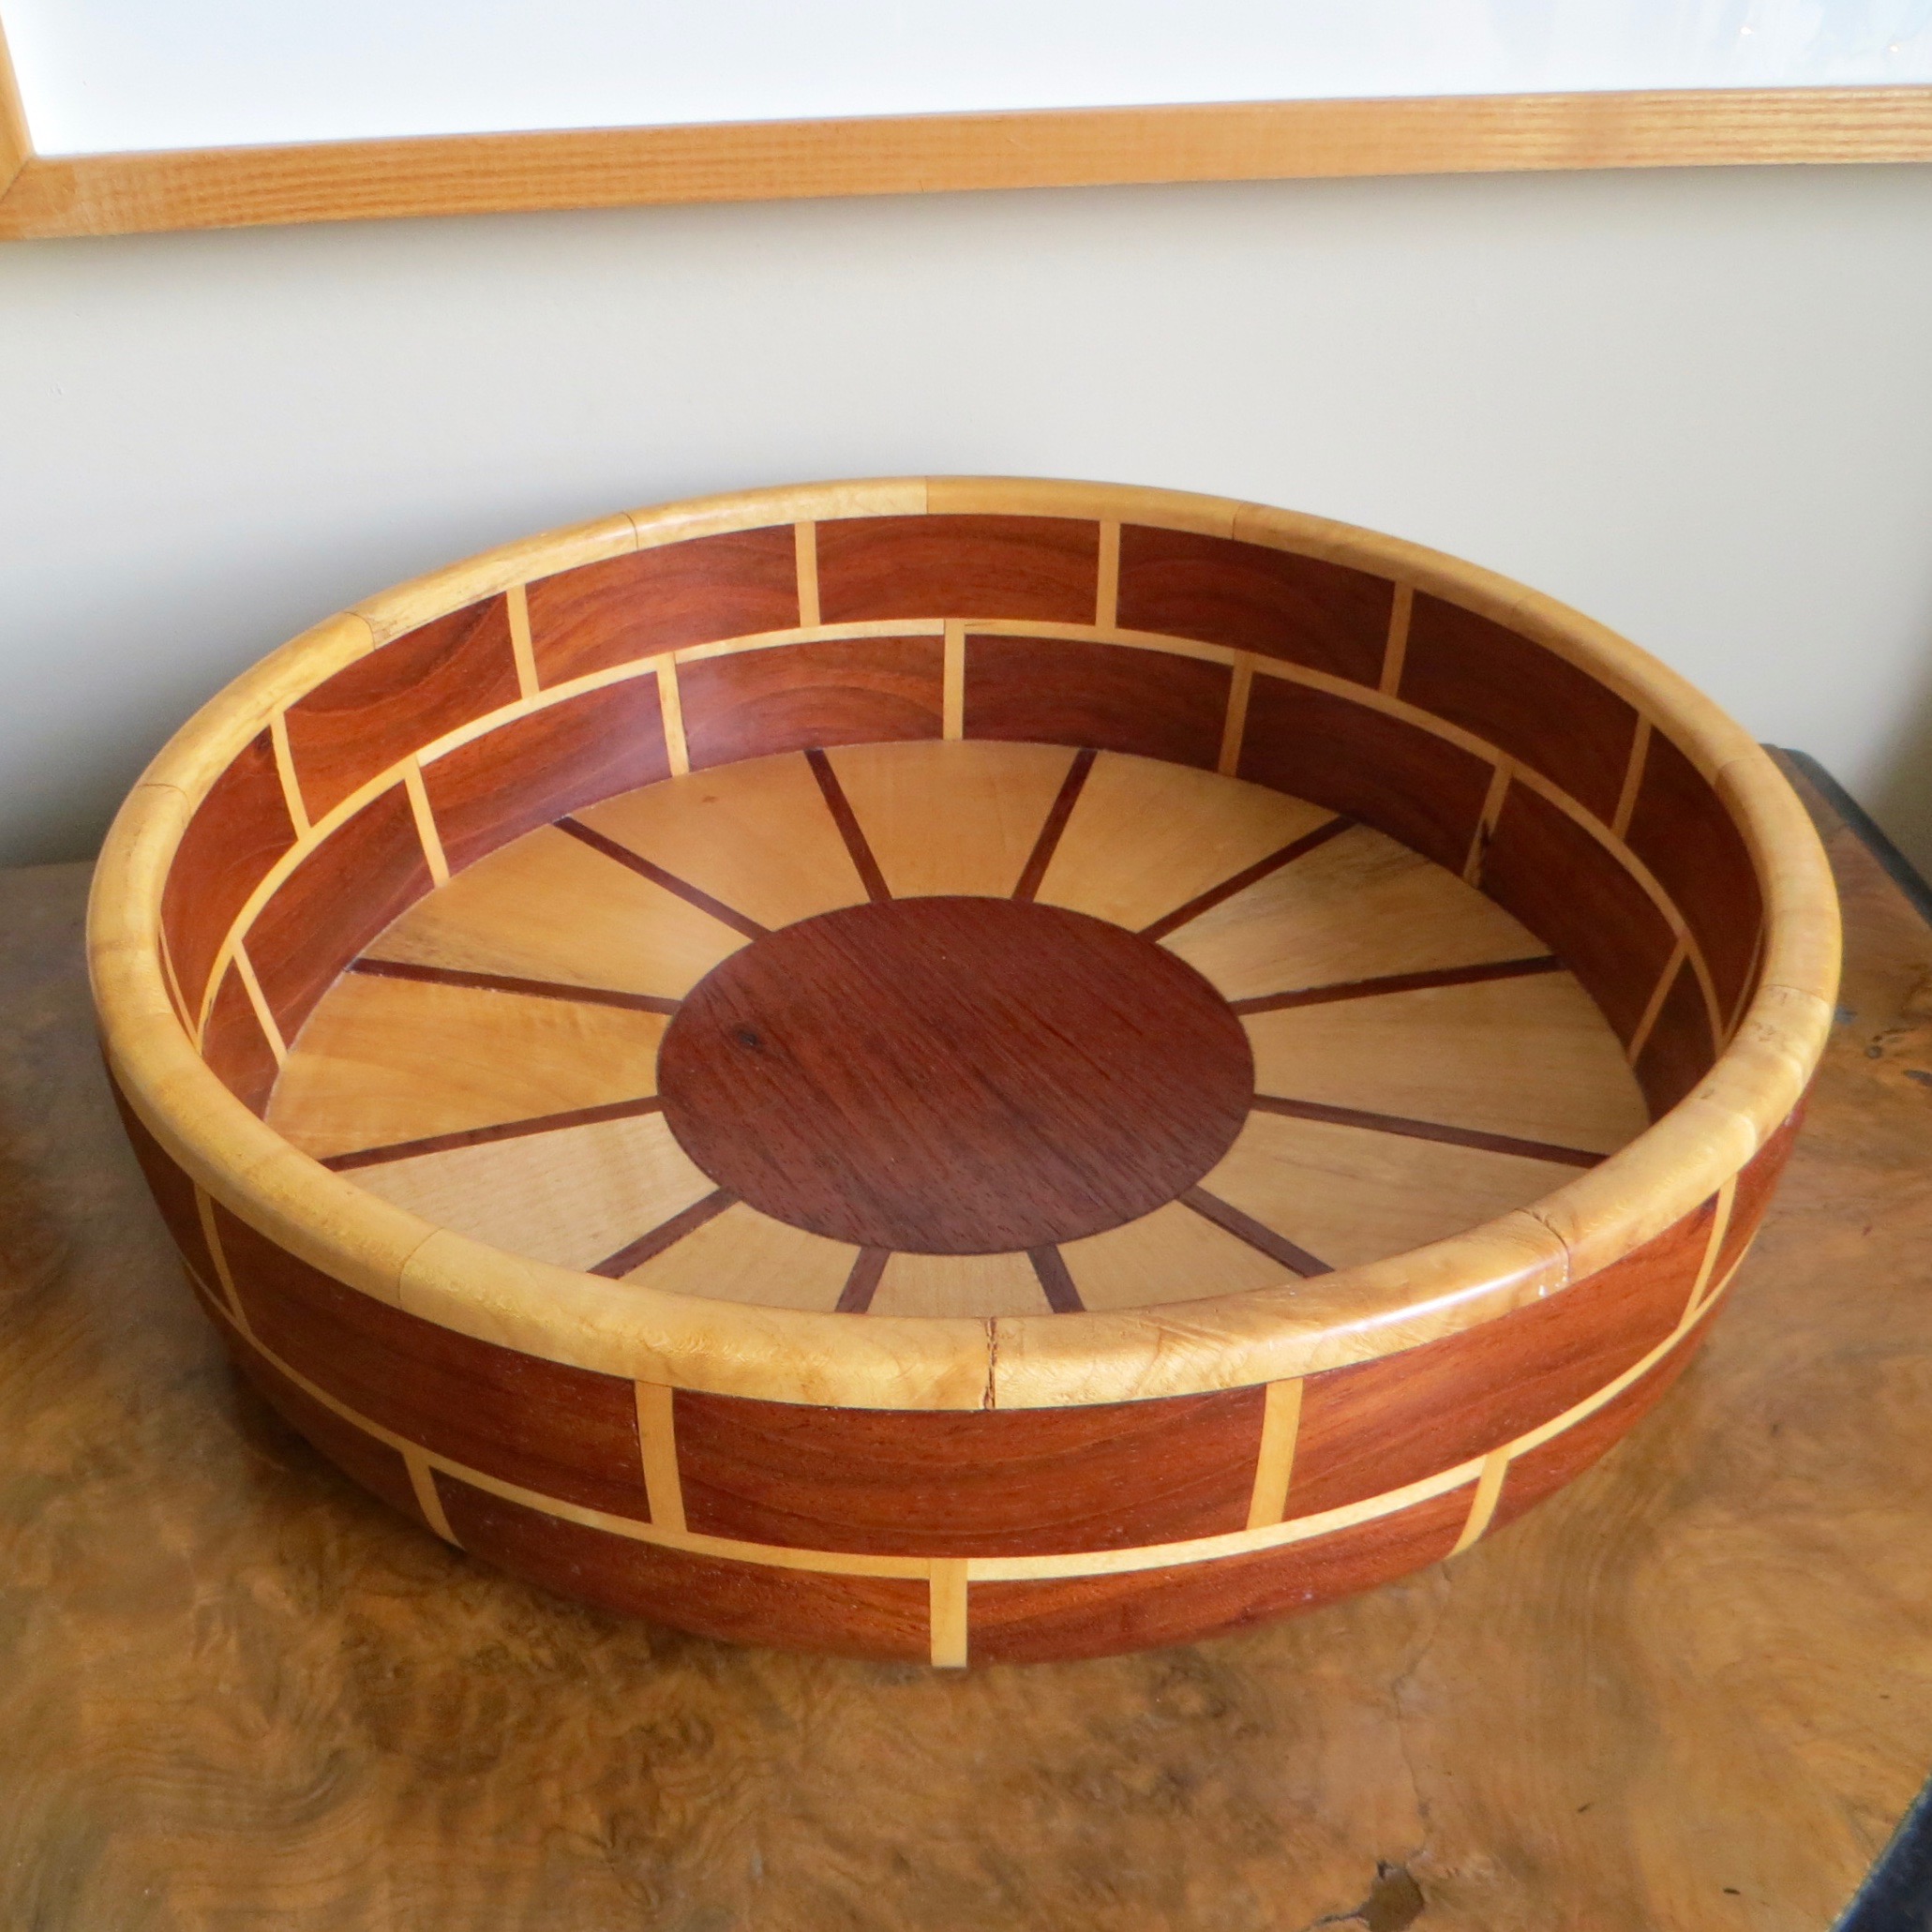 Wooden Sun Bowl